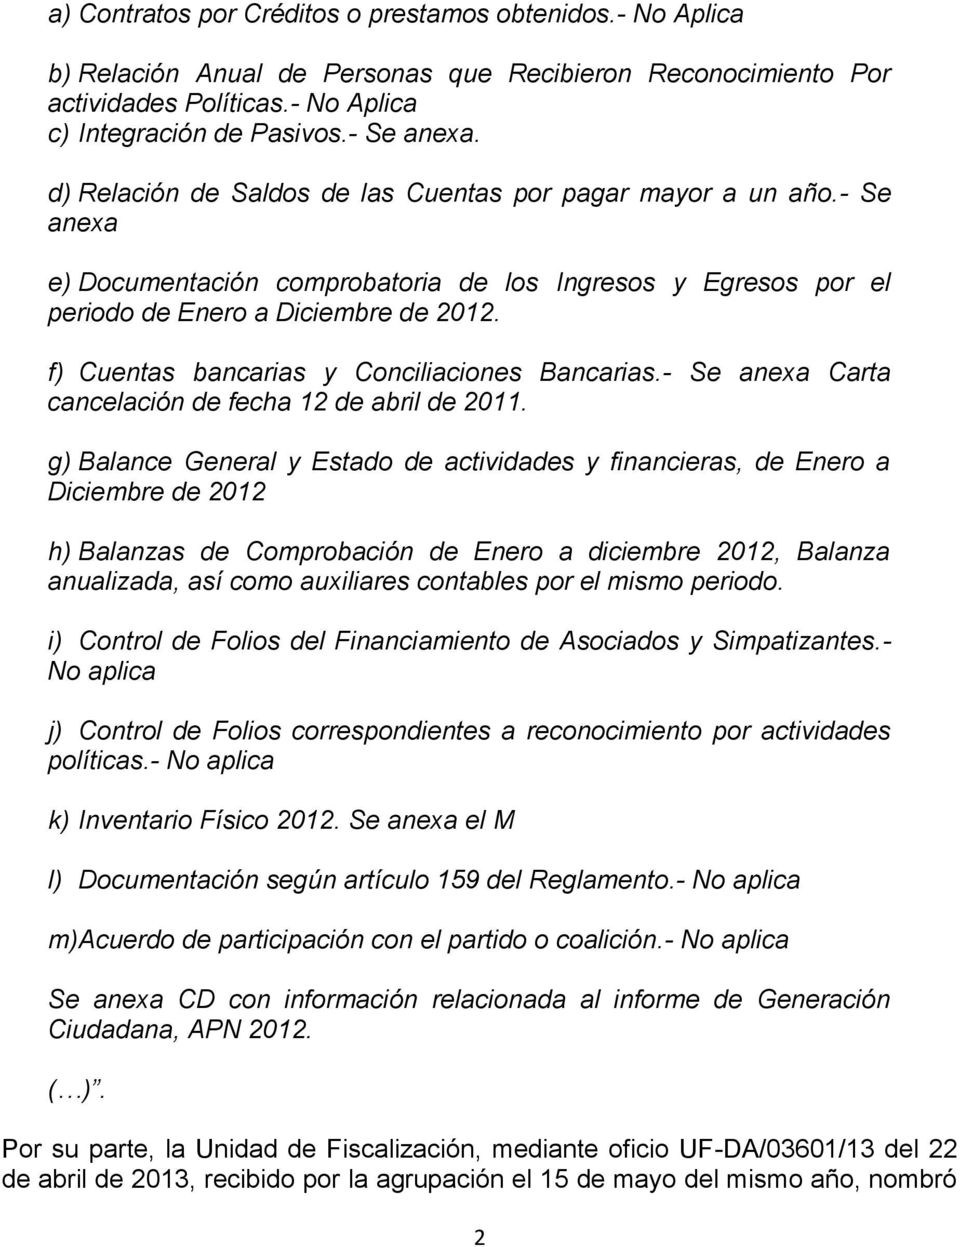 f) Cuentas bancarias y Conciliaciones Bancarias.- Se anexa Carta cancelación de fecha 12 de abril de 2011.